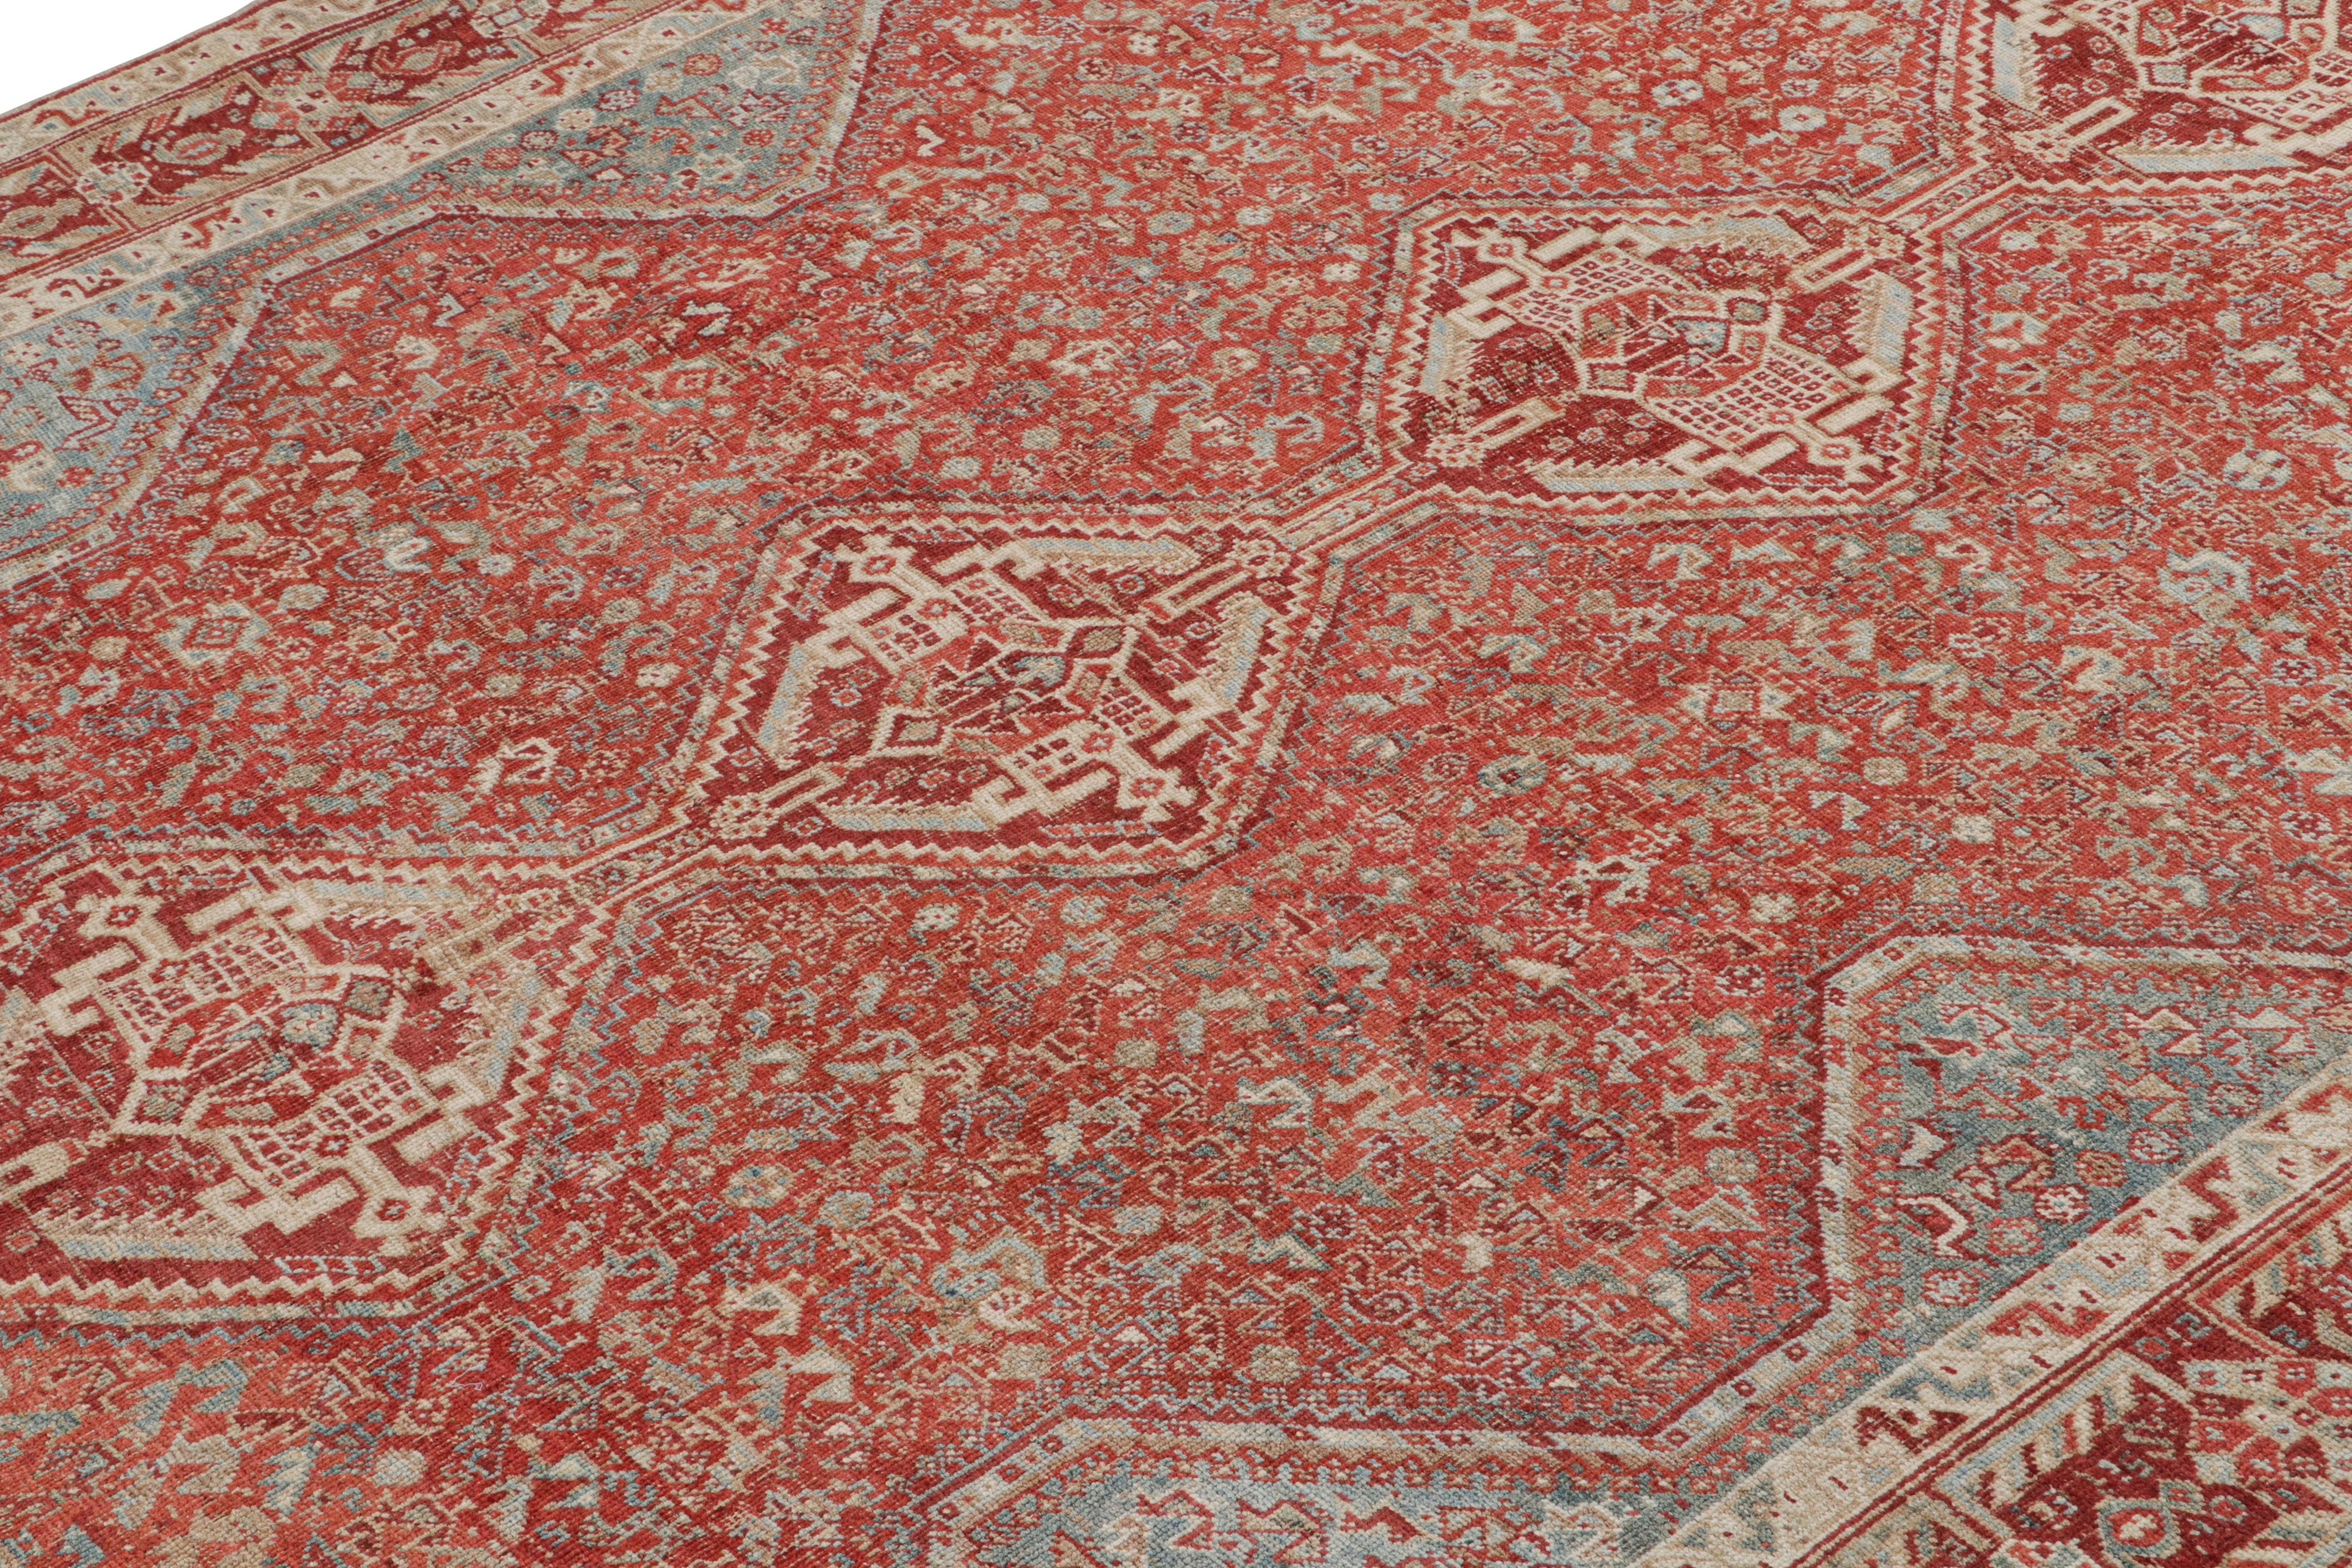 Ce tapis vintage 6x9 est considéré comme un rare tapis Ersari du milieu du siècle, noué à la main en laine et originaire de Turquie vers 1950-1960.

Sur le Design :

Les Ersari sont une sous-tribu du peuple turkmène, souvent connue pour ses dessins